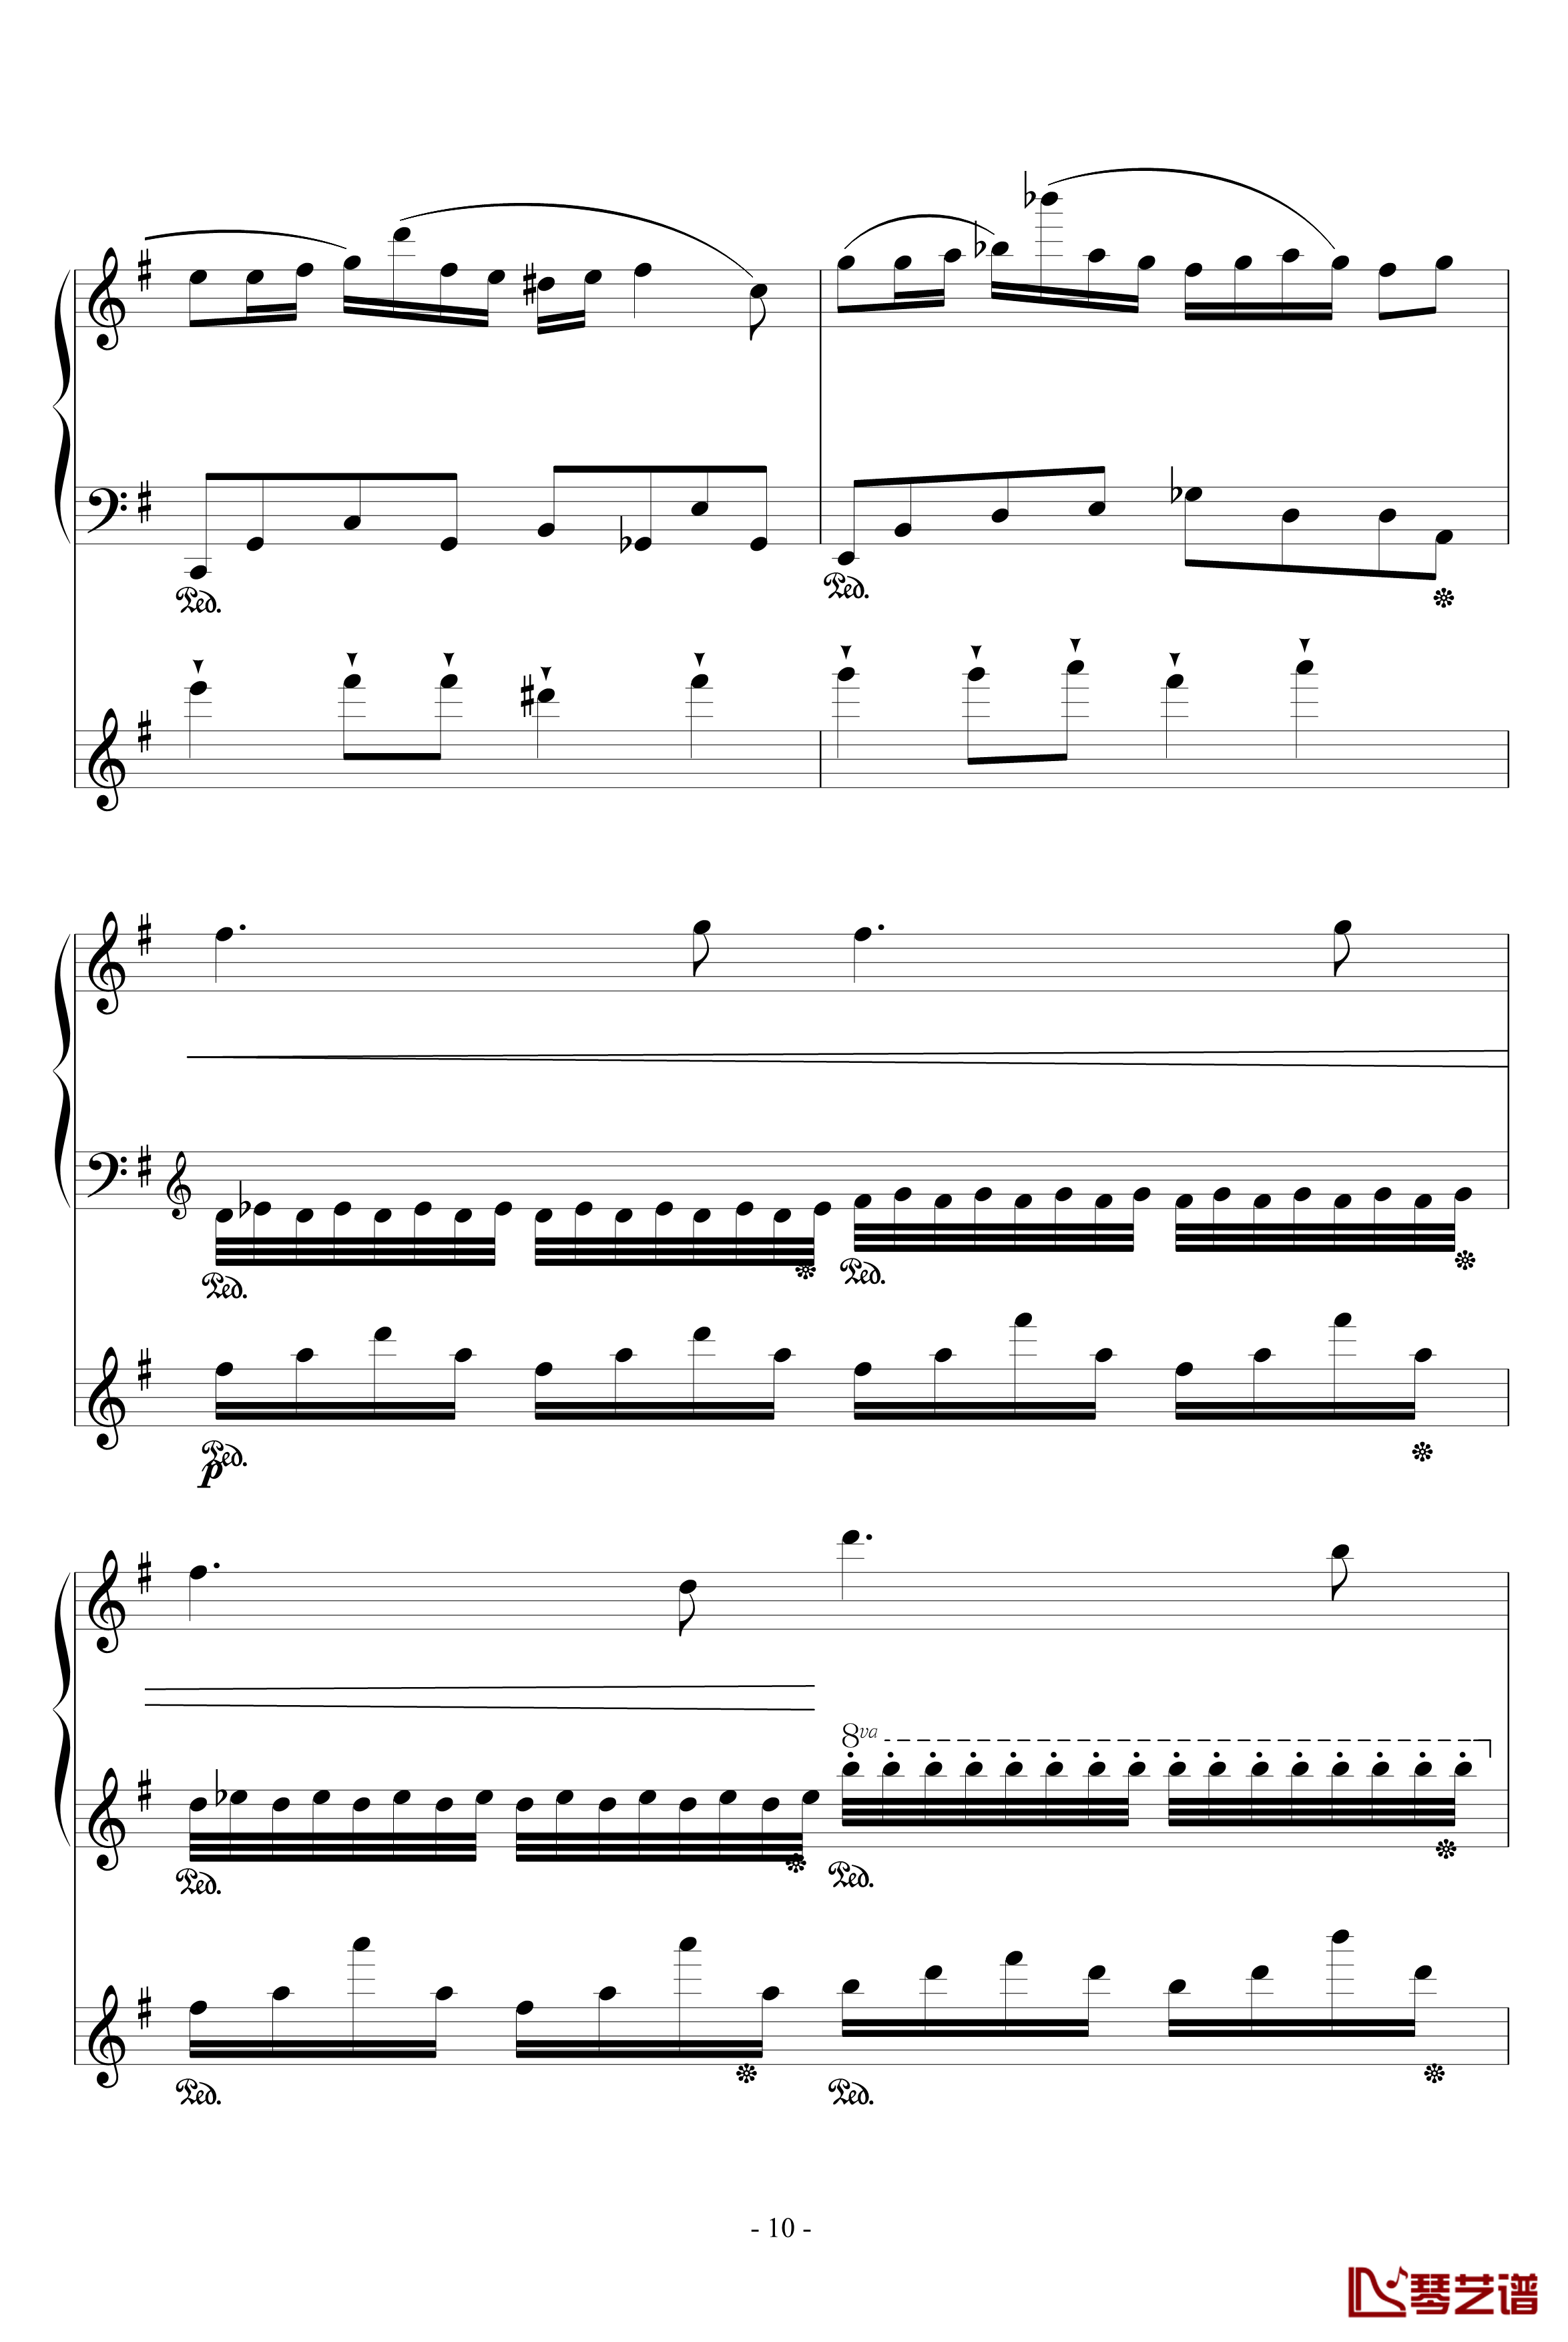 流星小幻想曲钢琴谱-修改-升c小调10